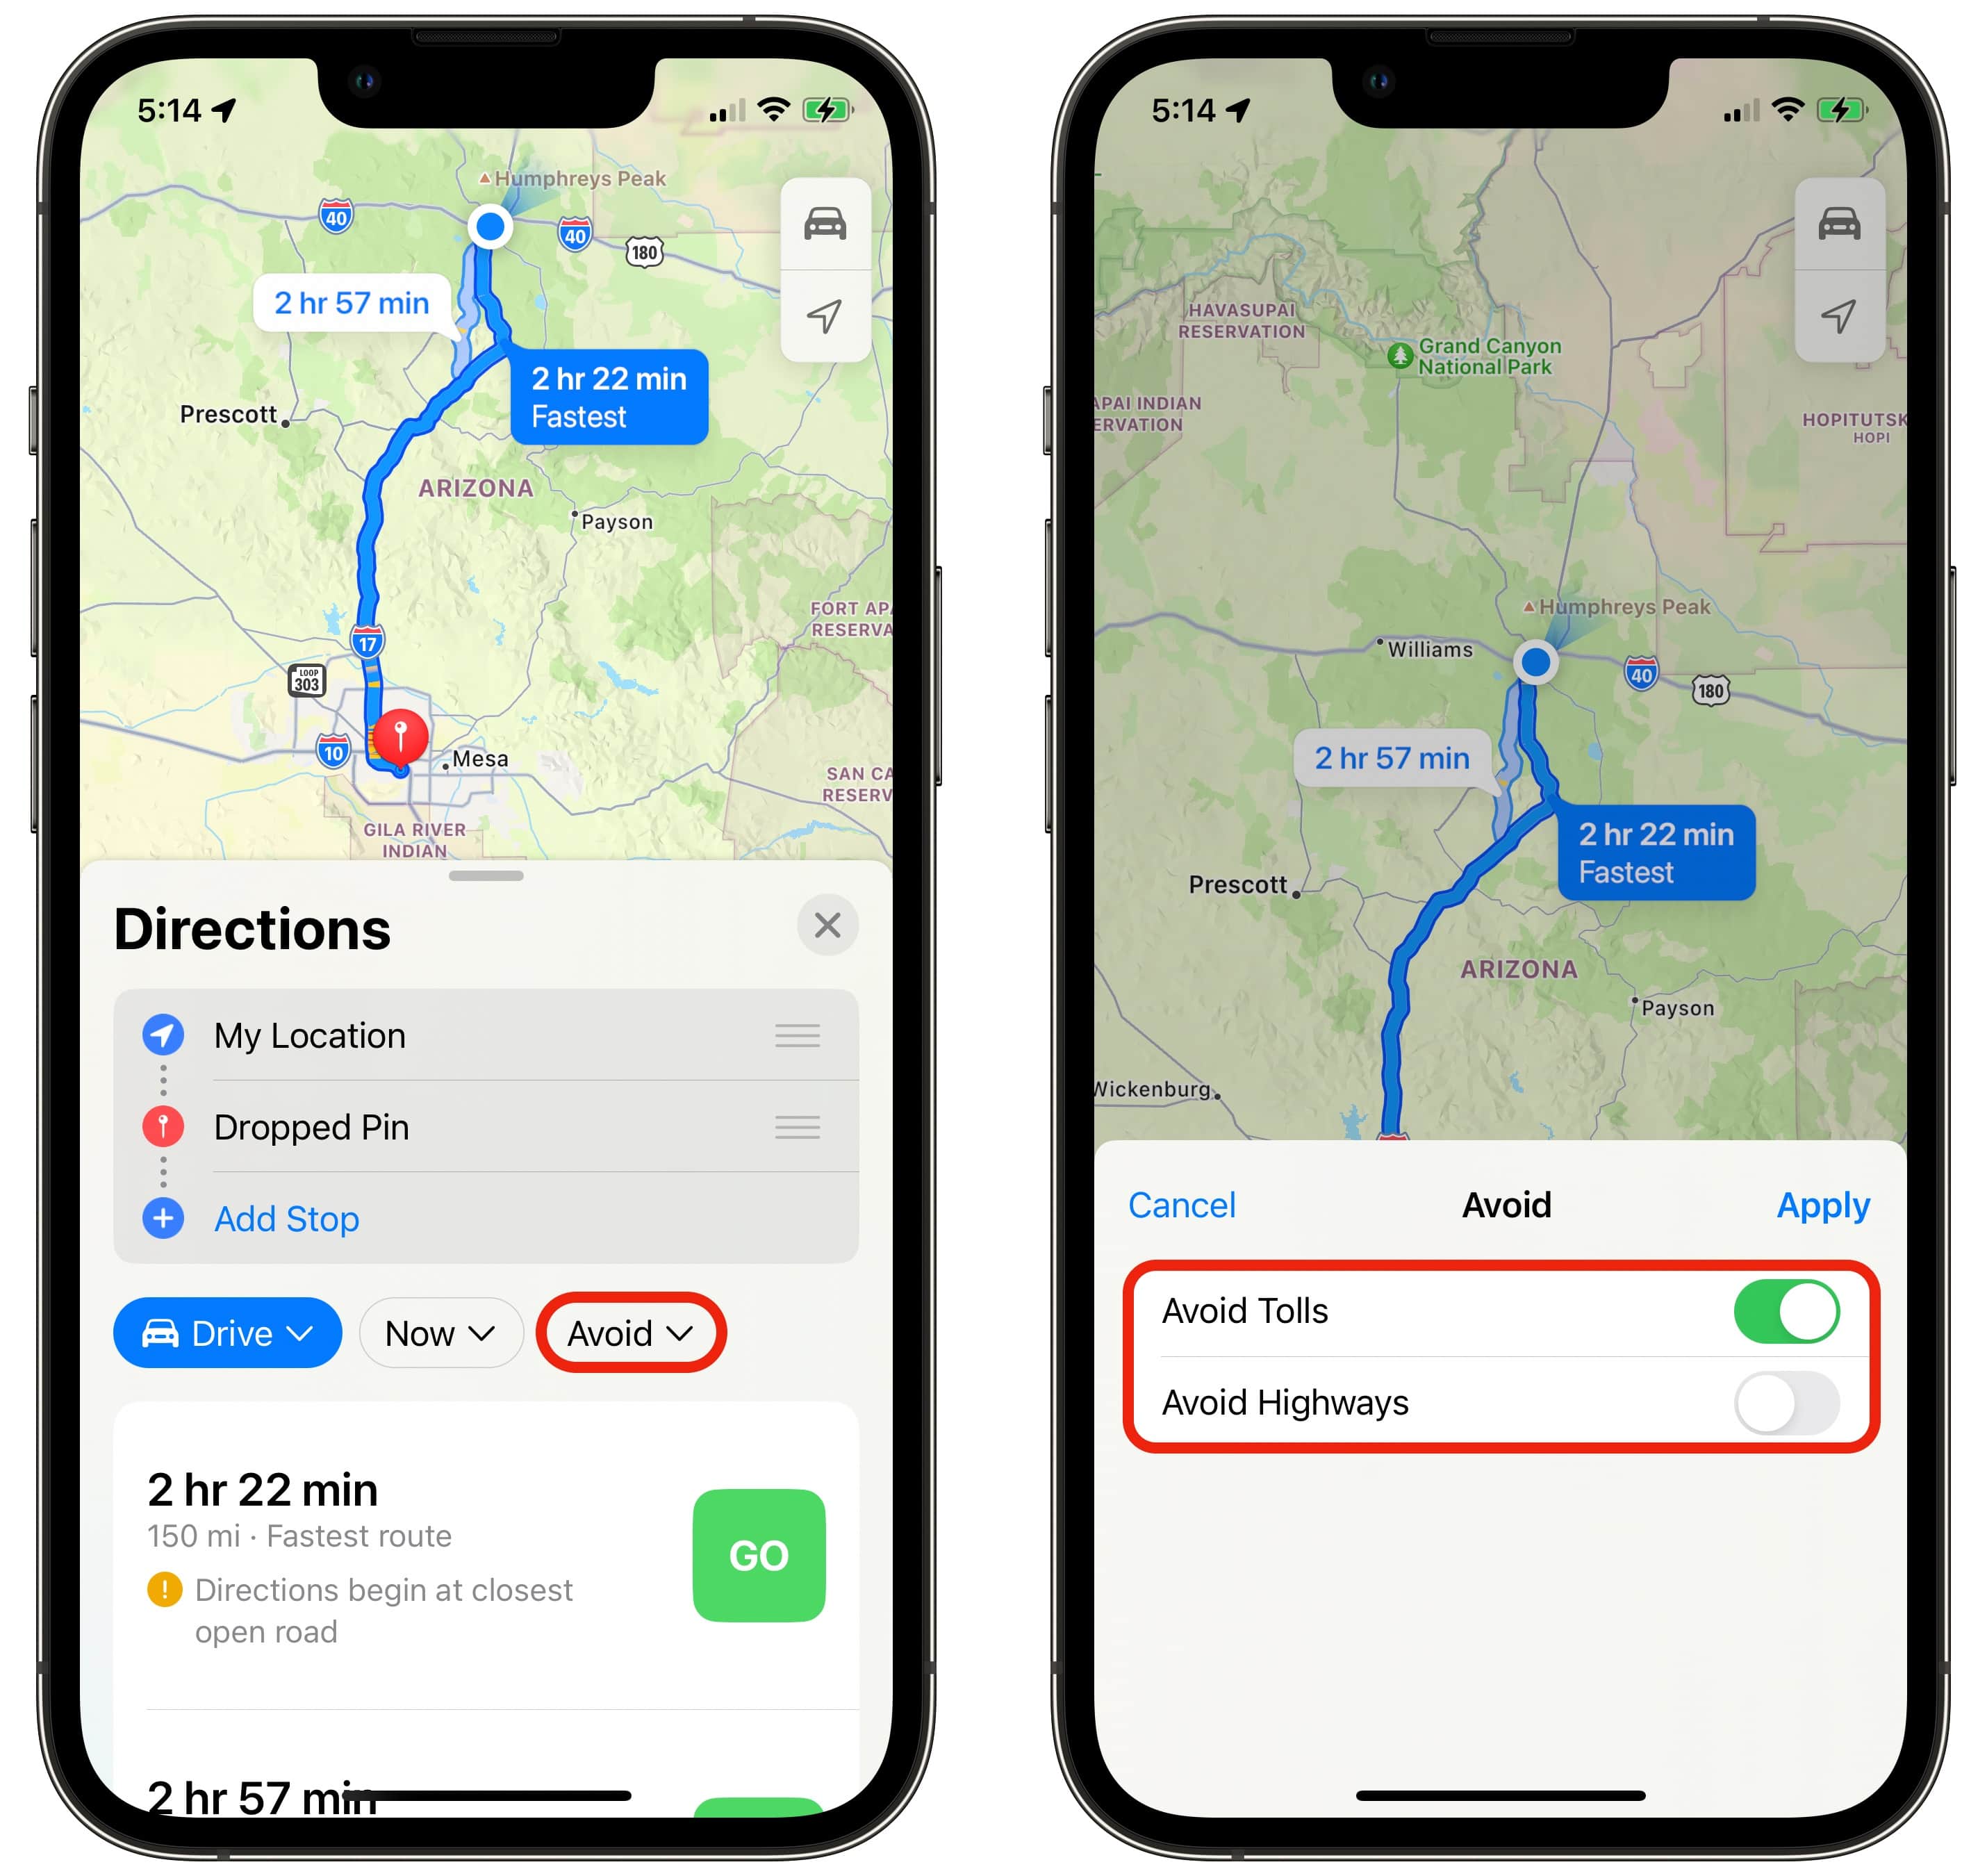 Avoid tolls in Apple Maps